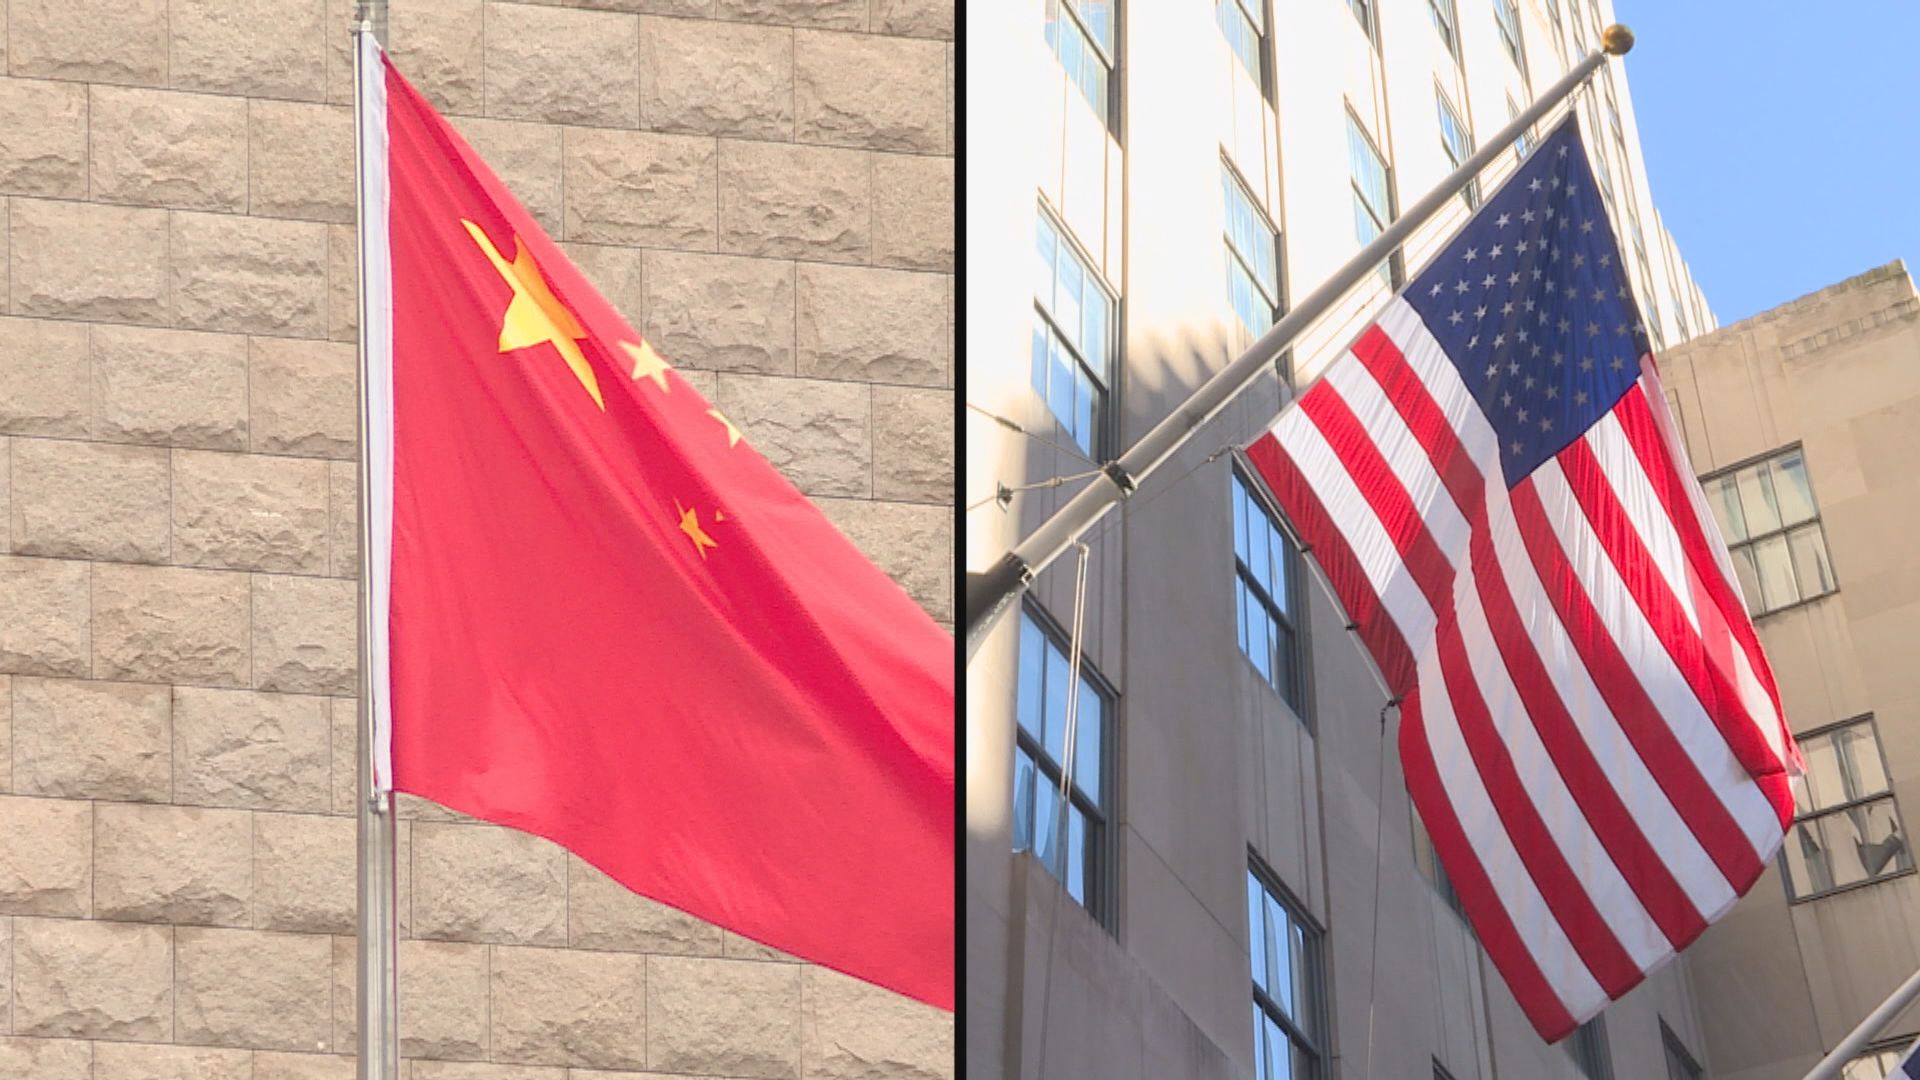 舍曼與秦剛會面未公布會談內容　新華社發表文章批評美國不斷挑戰一個中國原則